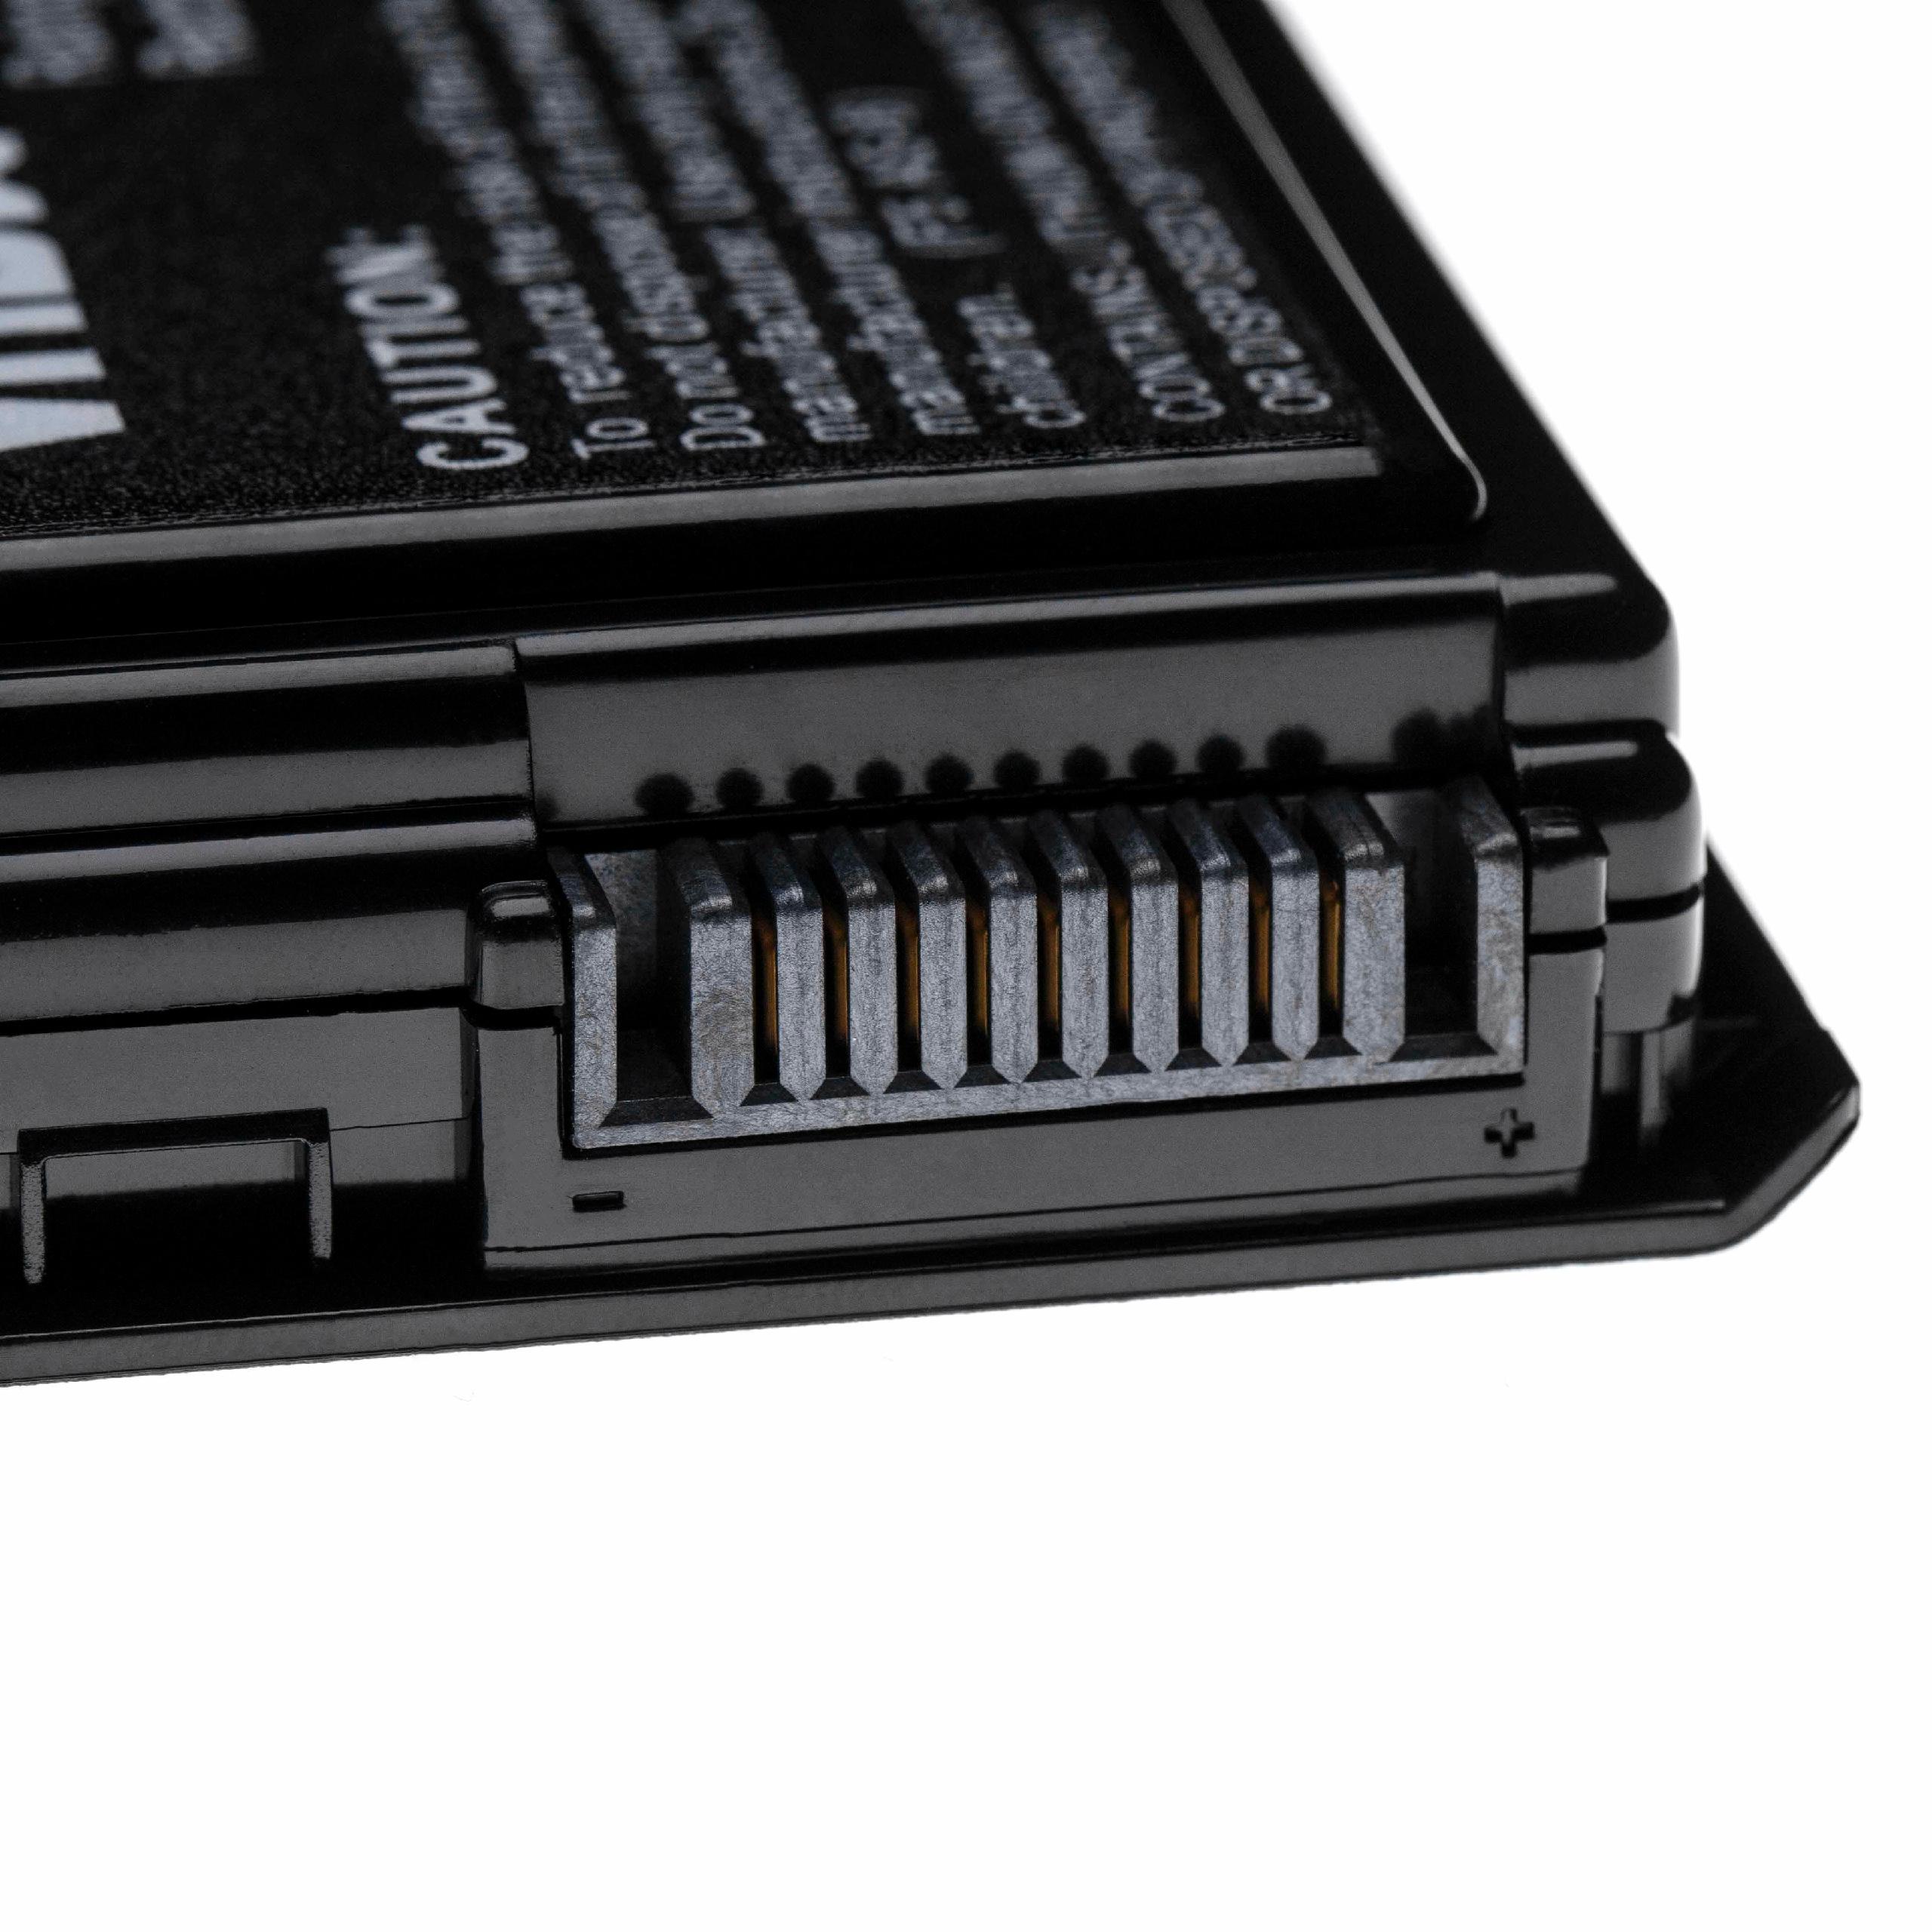 Akumulator do laptopa zamiennik Asus 70-NLF1B2000, 70-NLF1B2000Y, 70-NLF1B2000Z - 5200 mAh 11,1 V LiPo, czarny